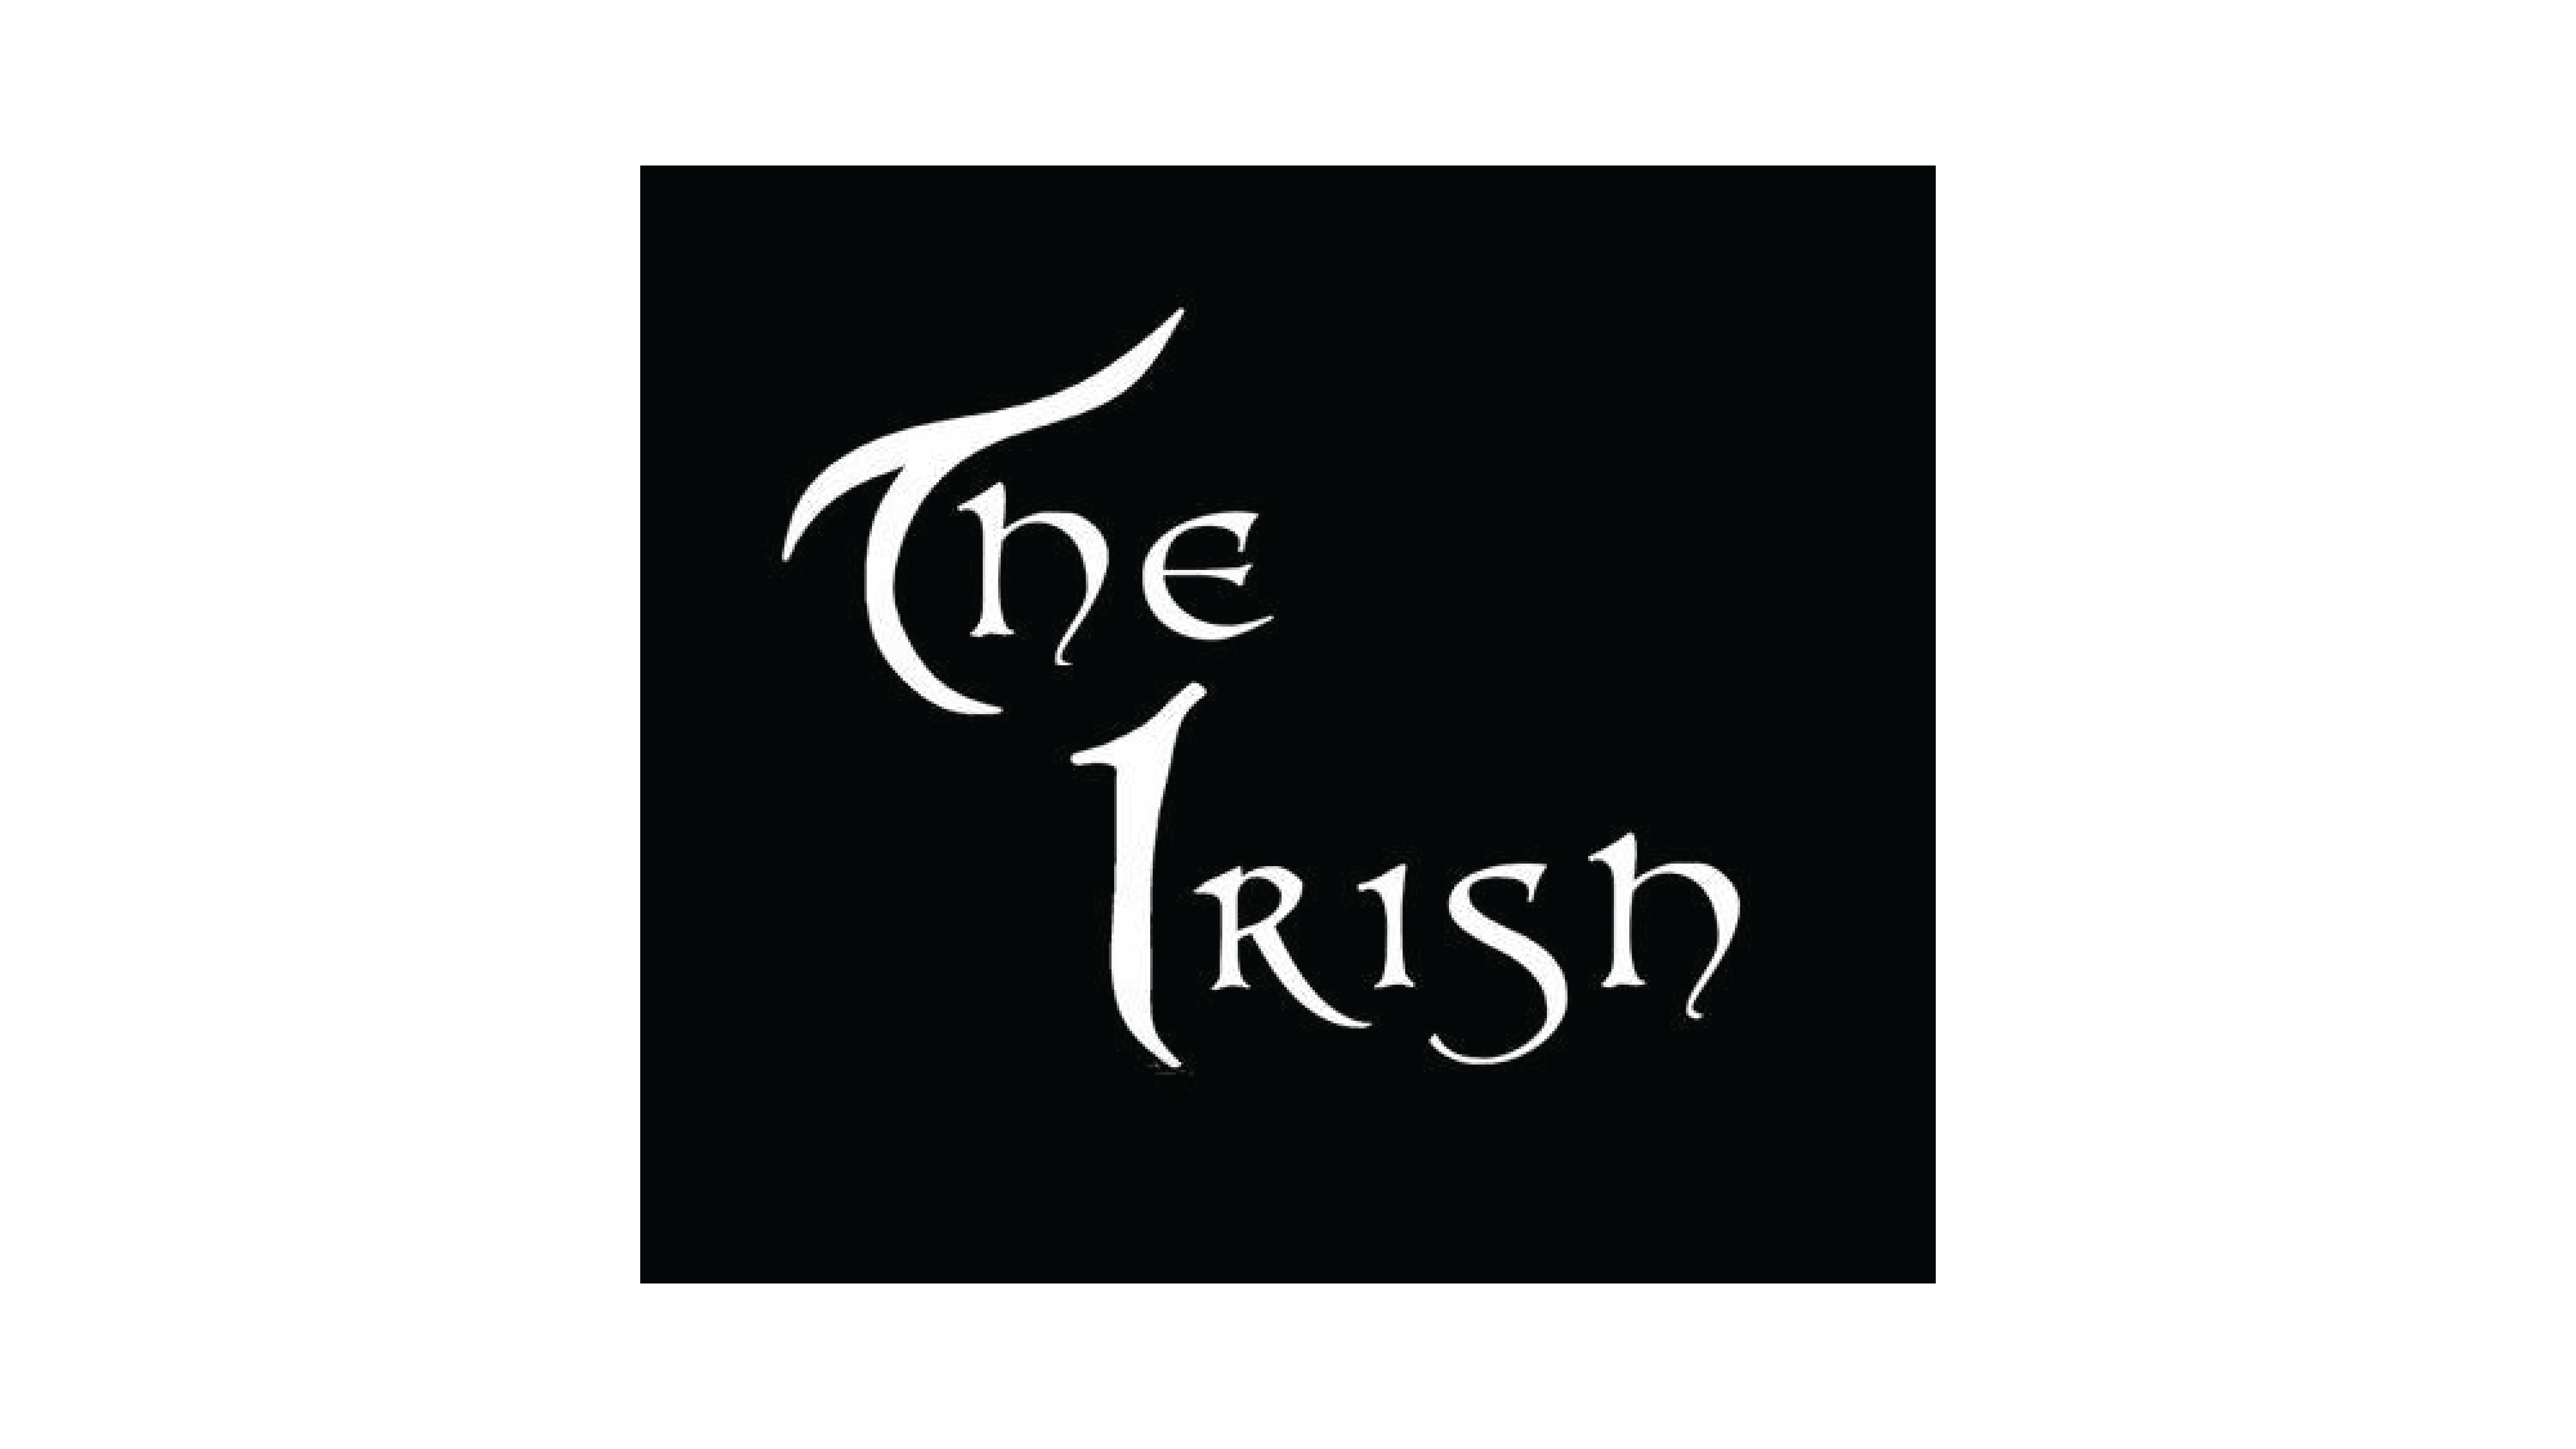 THE IRISH